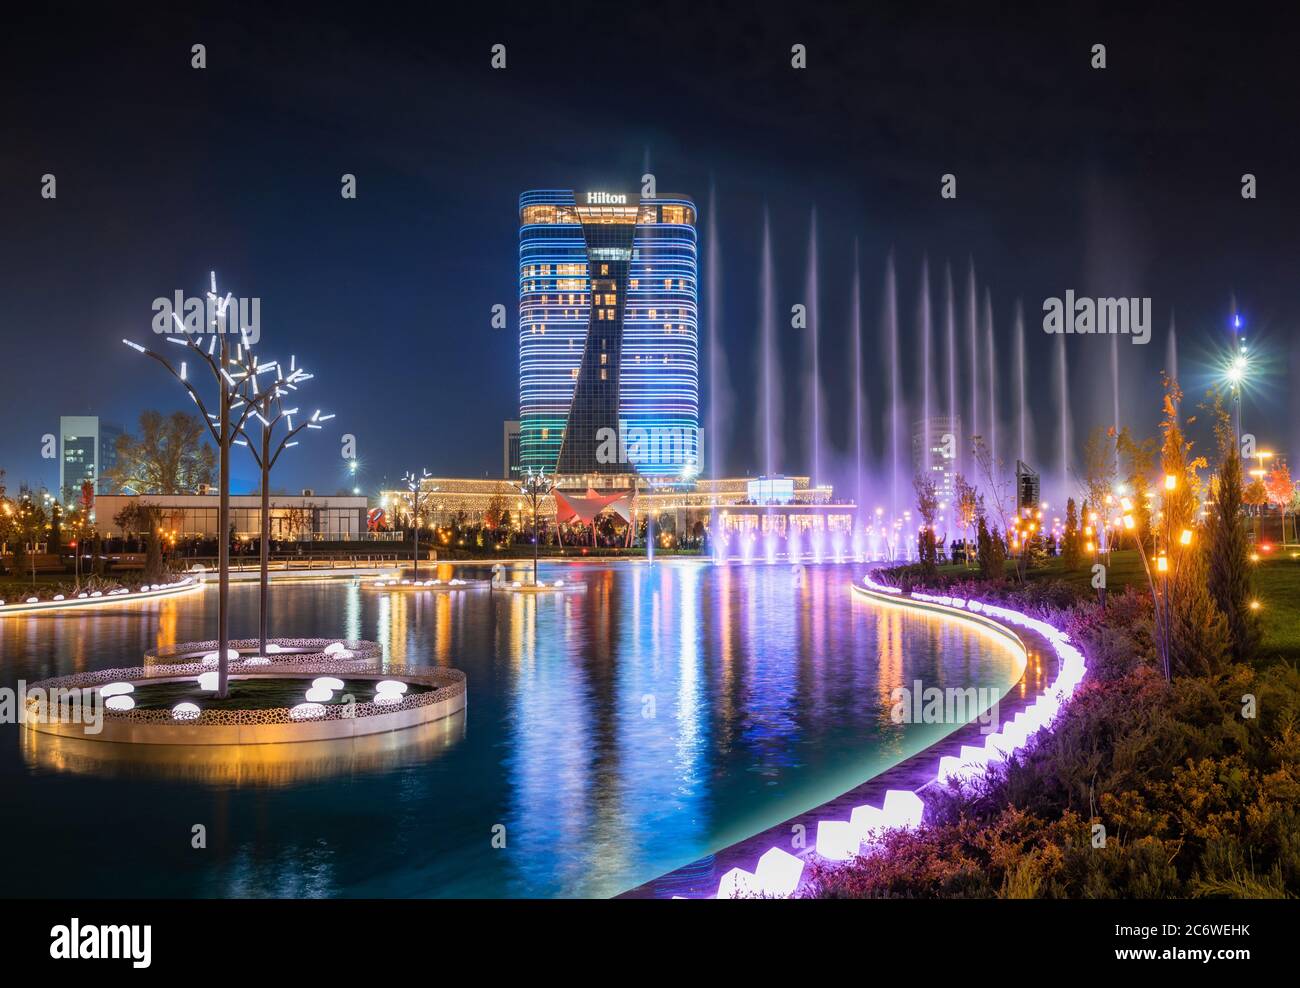 Tashkent, Uzbekistan - 30 Ottobre, 2019: bella fontana danzante illuminata di notte con la riflessione in Stagno nella nuova città di Tashkent Park Foto Stock